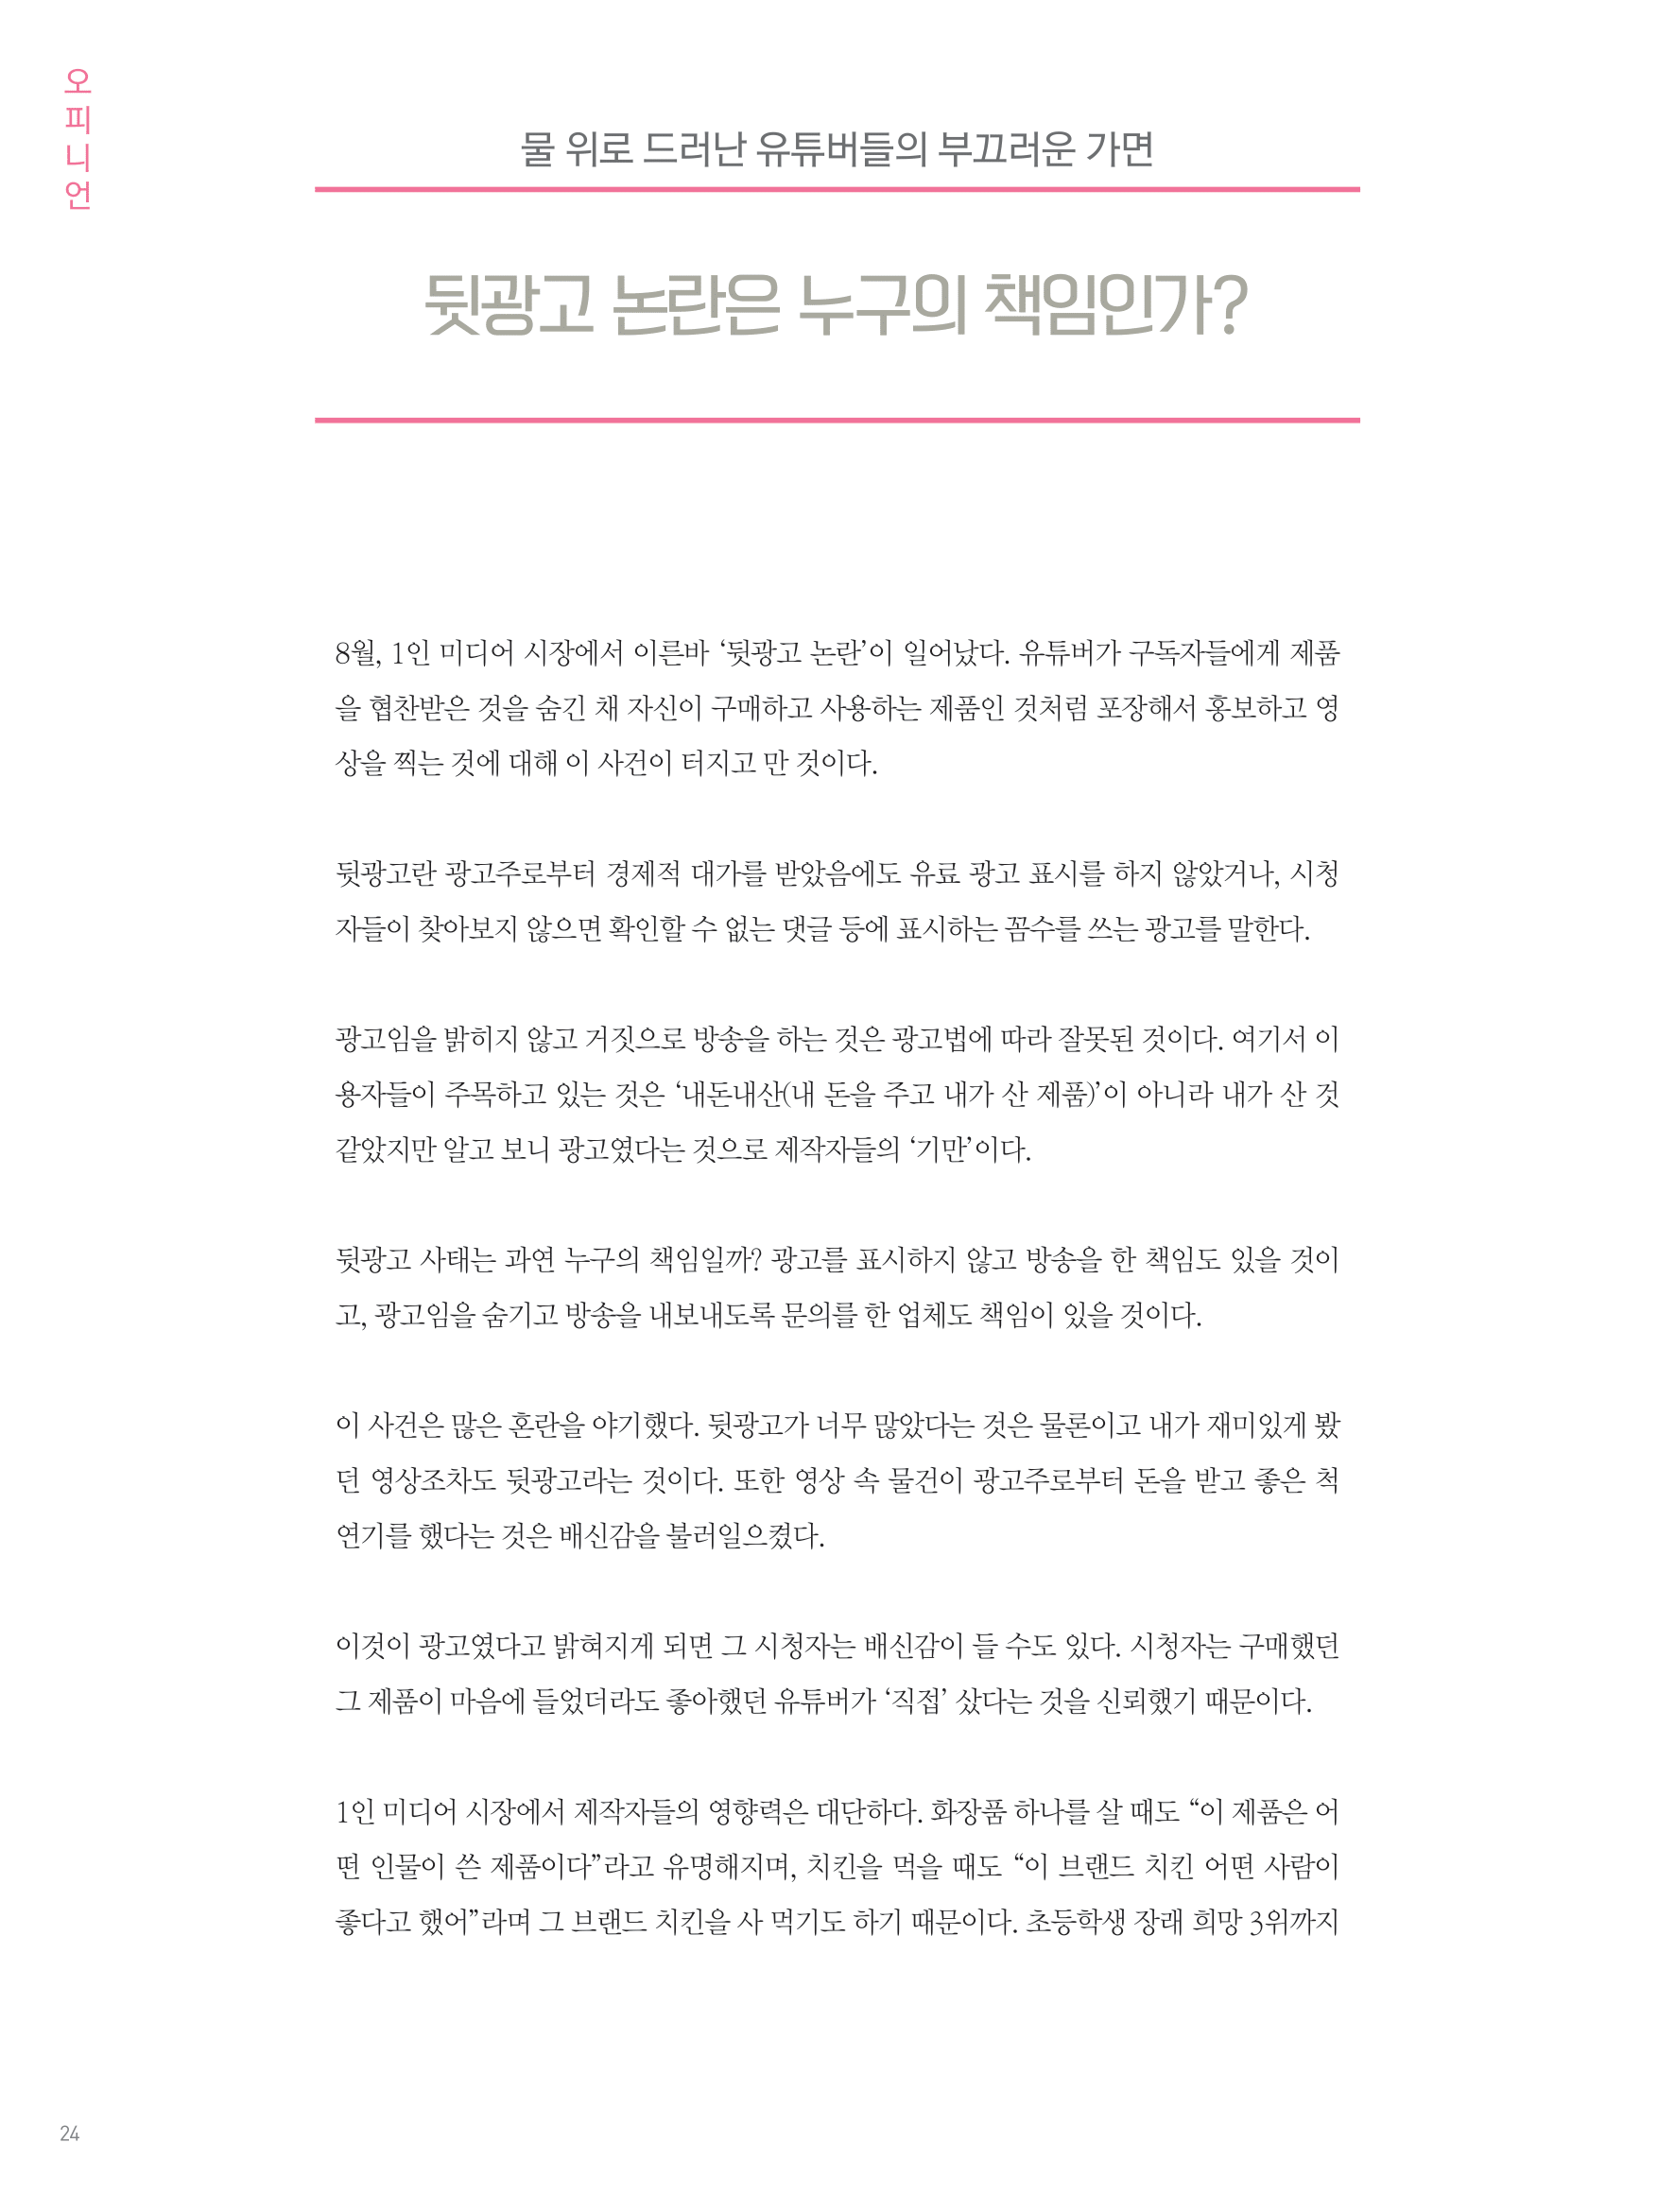 뜻새김 신문 76호 22